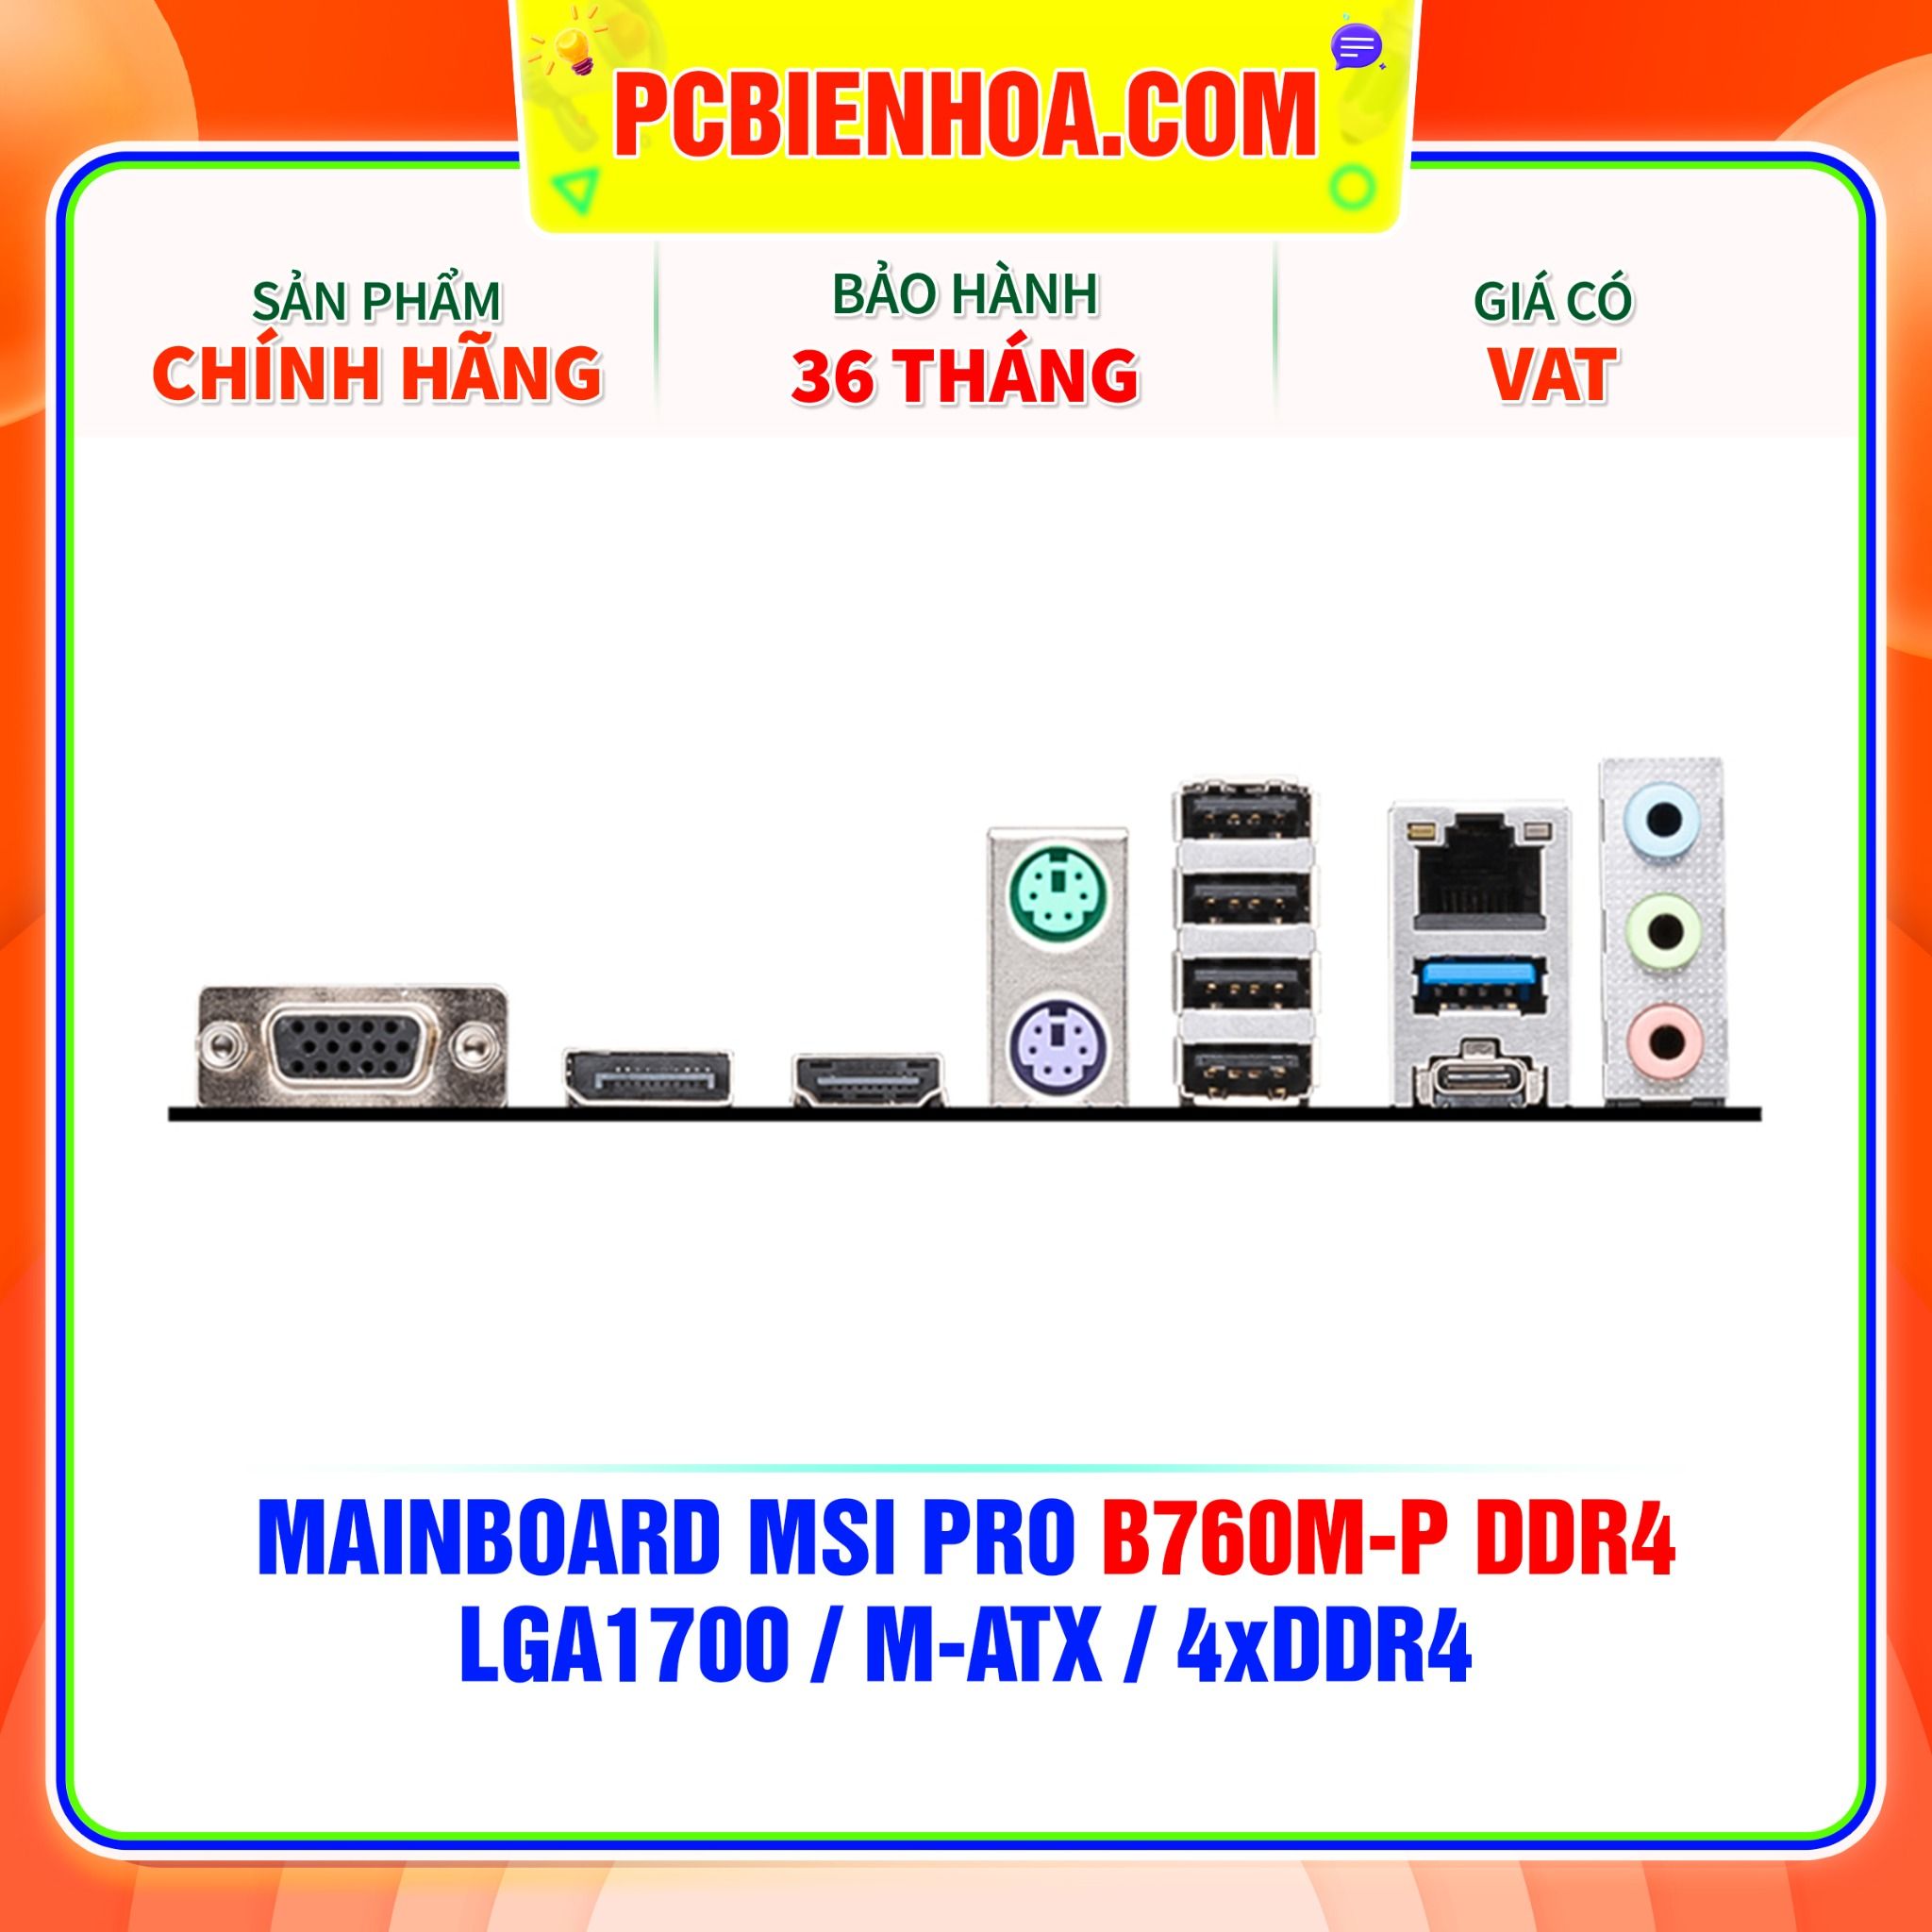  MAINBOARD MSI PRO B760M-P DDR4 ( LGA1700 / m-ATX / 4xDDR4 ) 